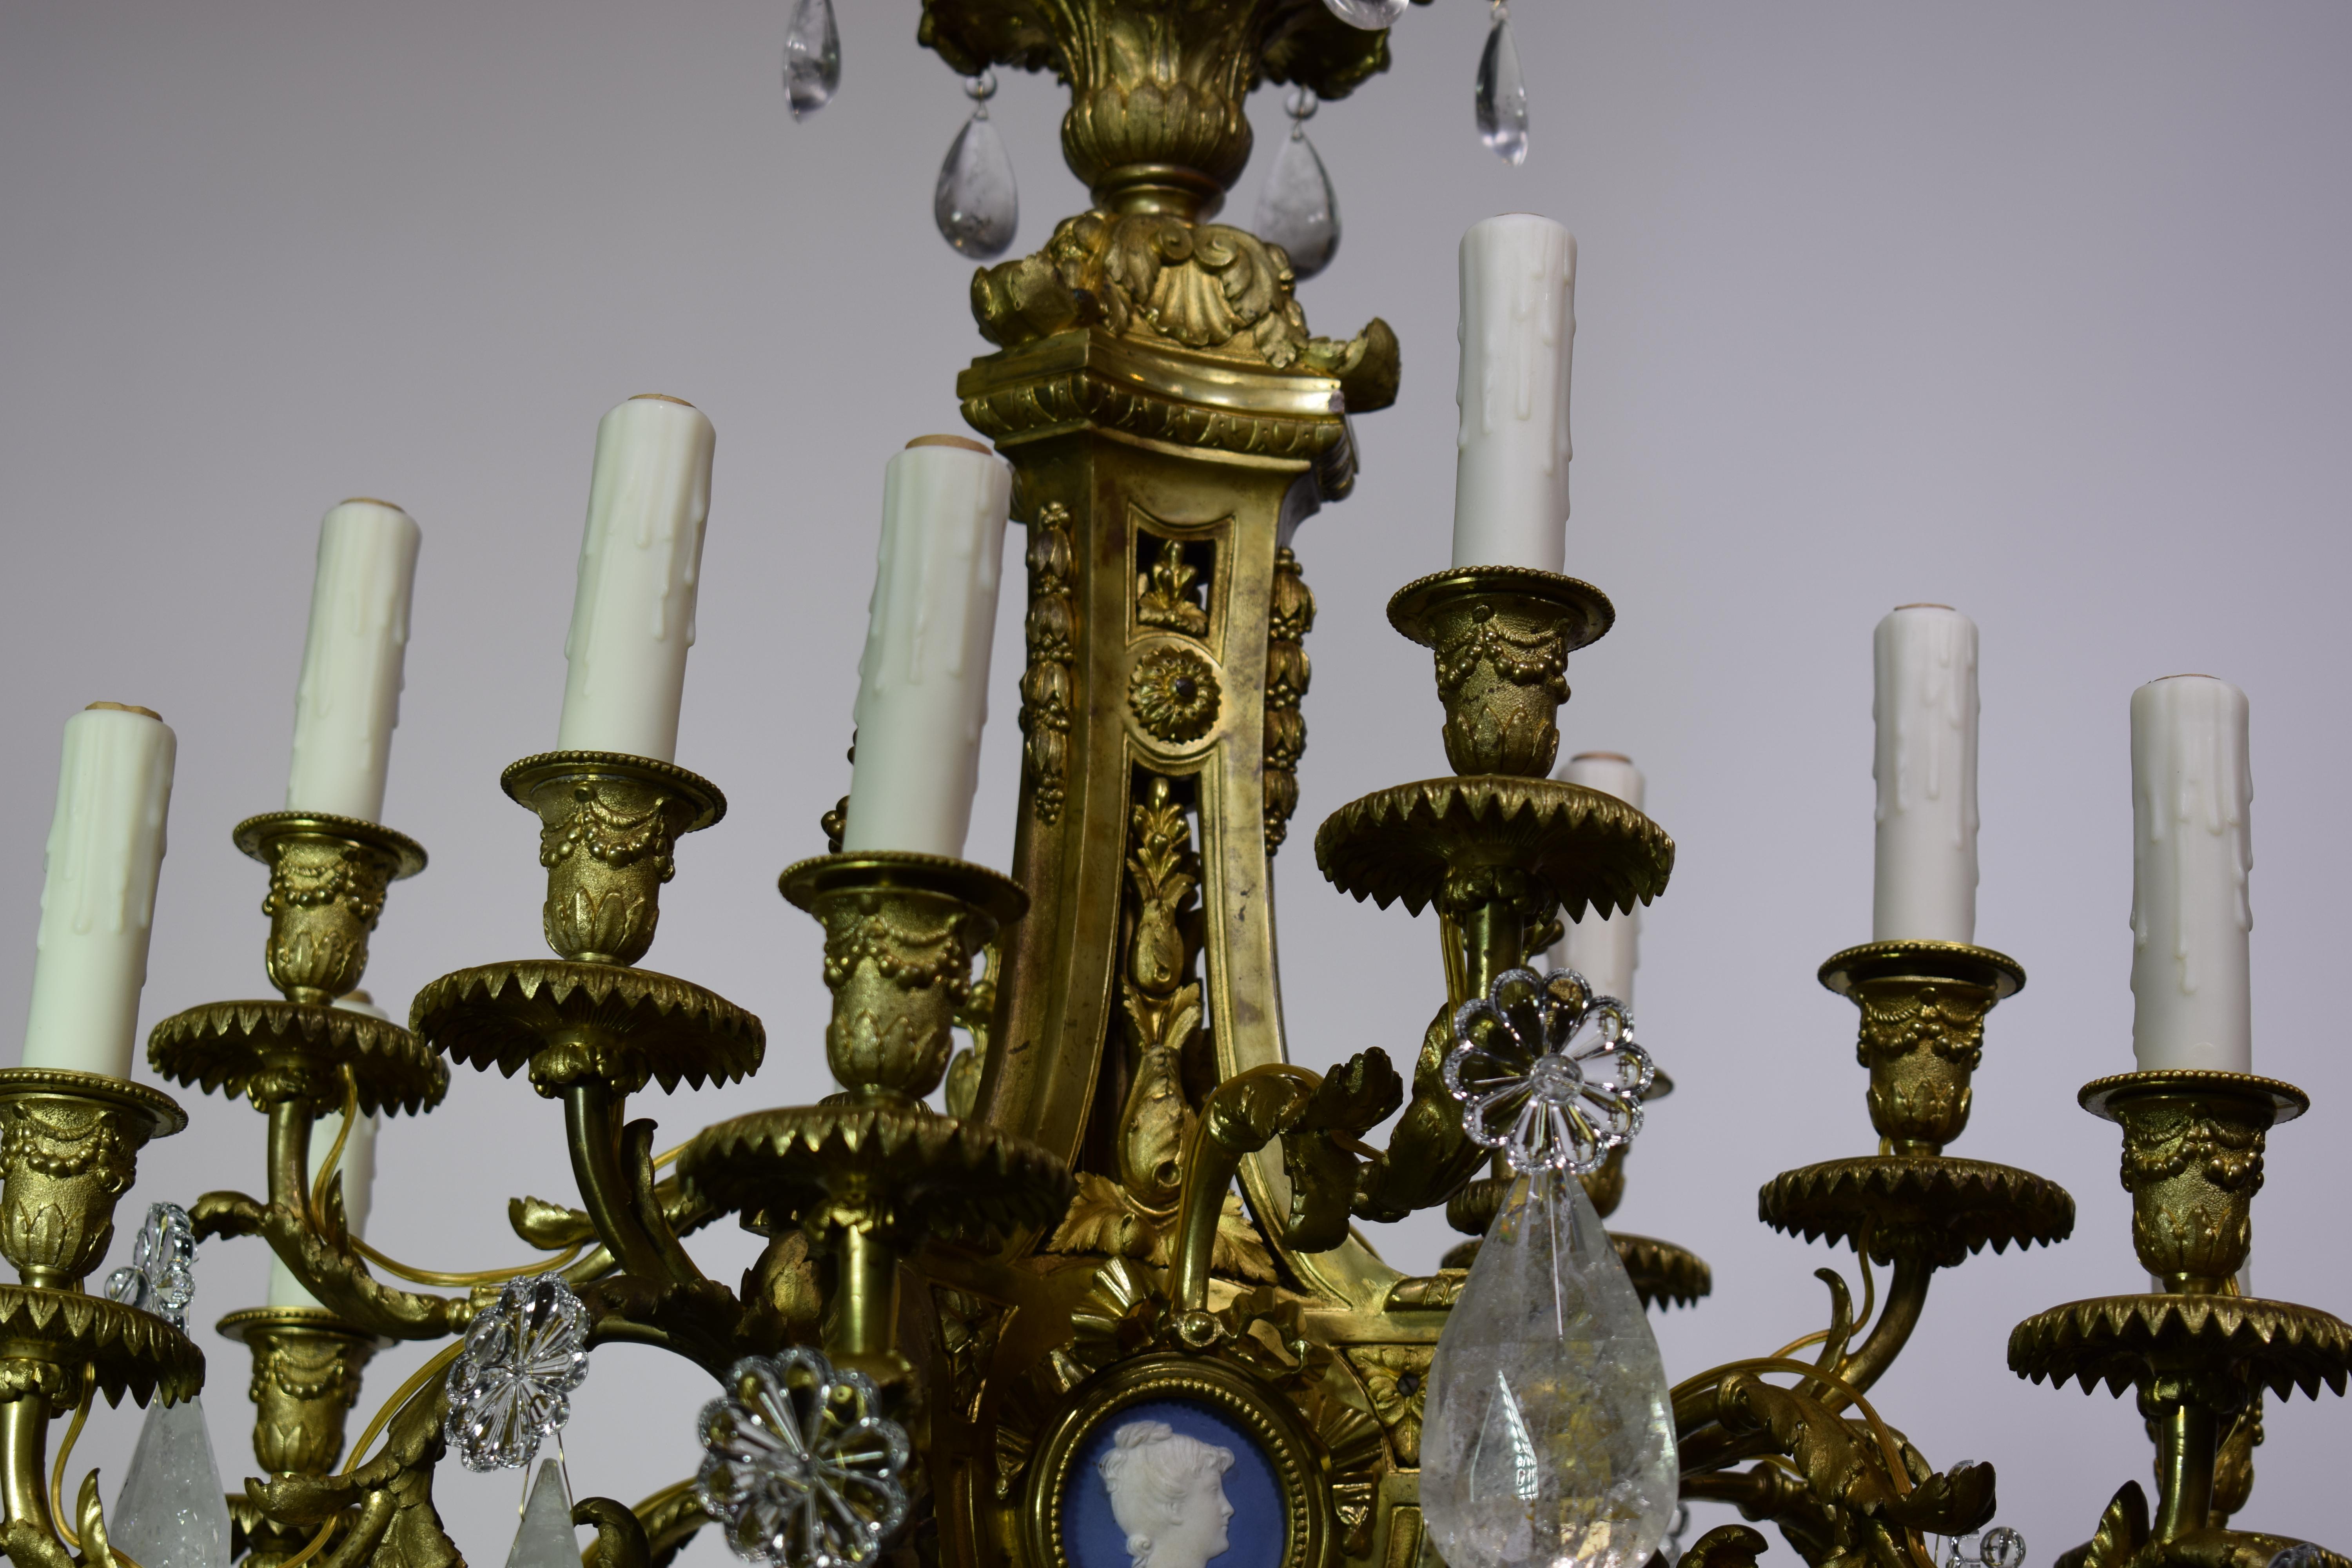 Ein prächtiger Kronleuchter aus vergoldeter Bronze, Kristall und Bergkristall im Louis-XVI-Stil mit runden Reserven, die mit runden blauen und weißen Biskuitkameen ausgestattet sind. Dieser Kronleuchter wurde ursprünglich für Kerzen verwendet, jetzt